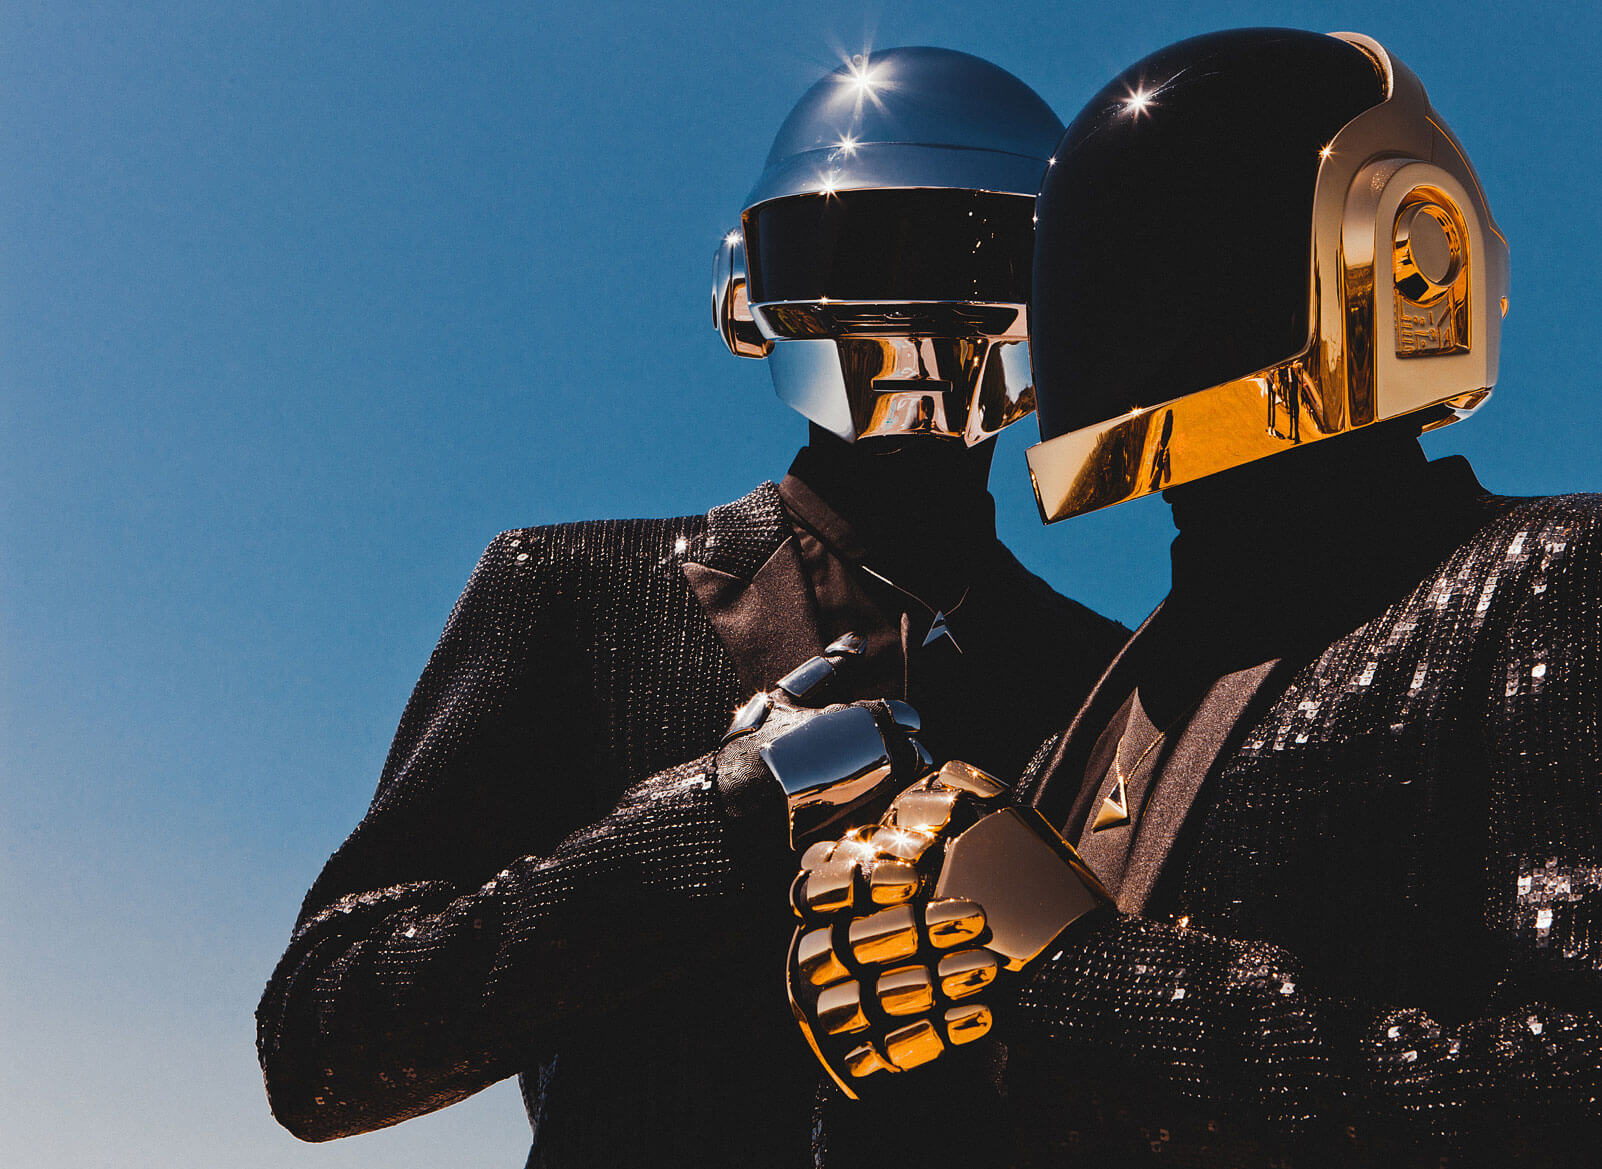 ย้อนรอย 10 บทเพลงที่นิยามความเป็น ‘Daft Punk’